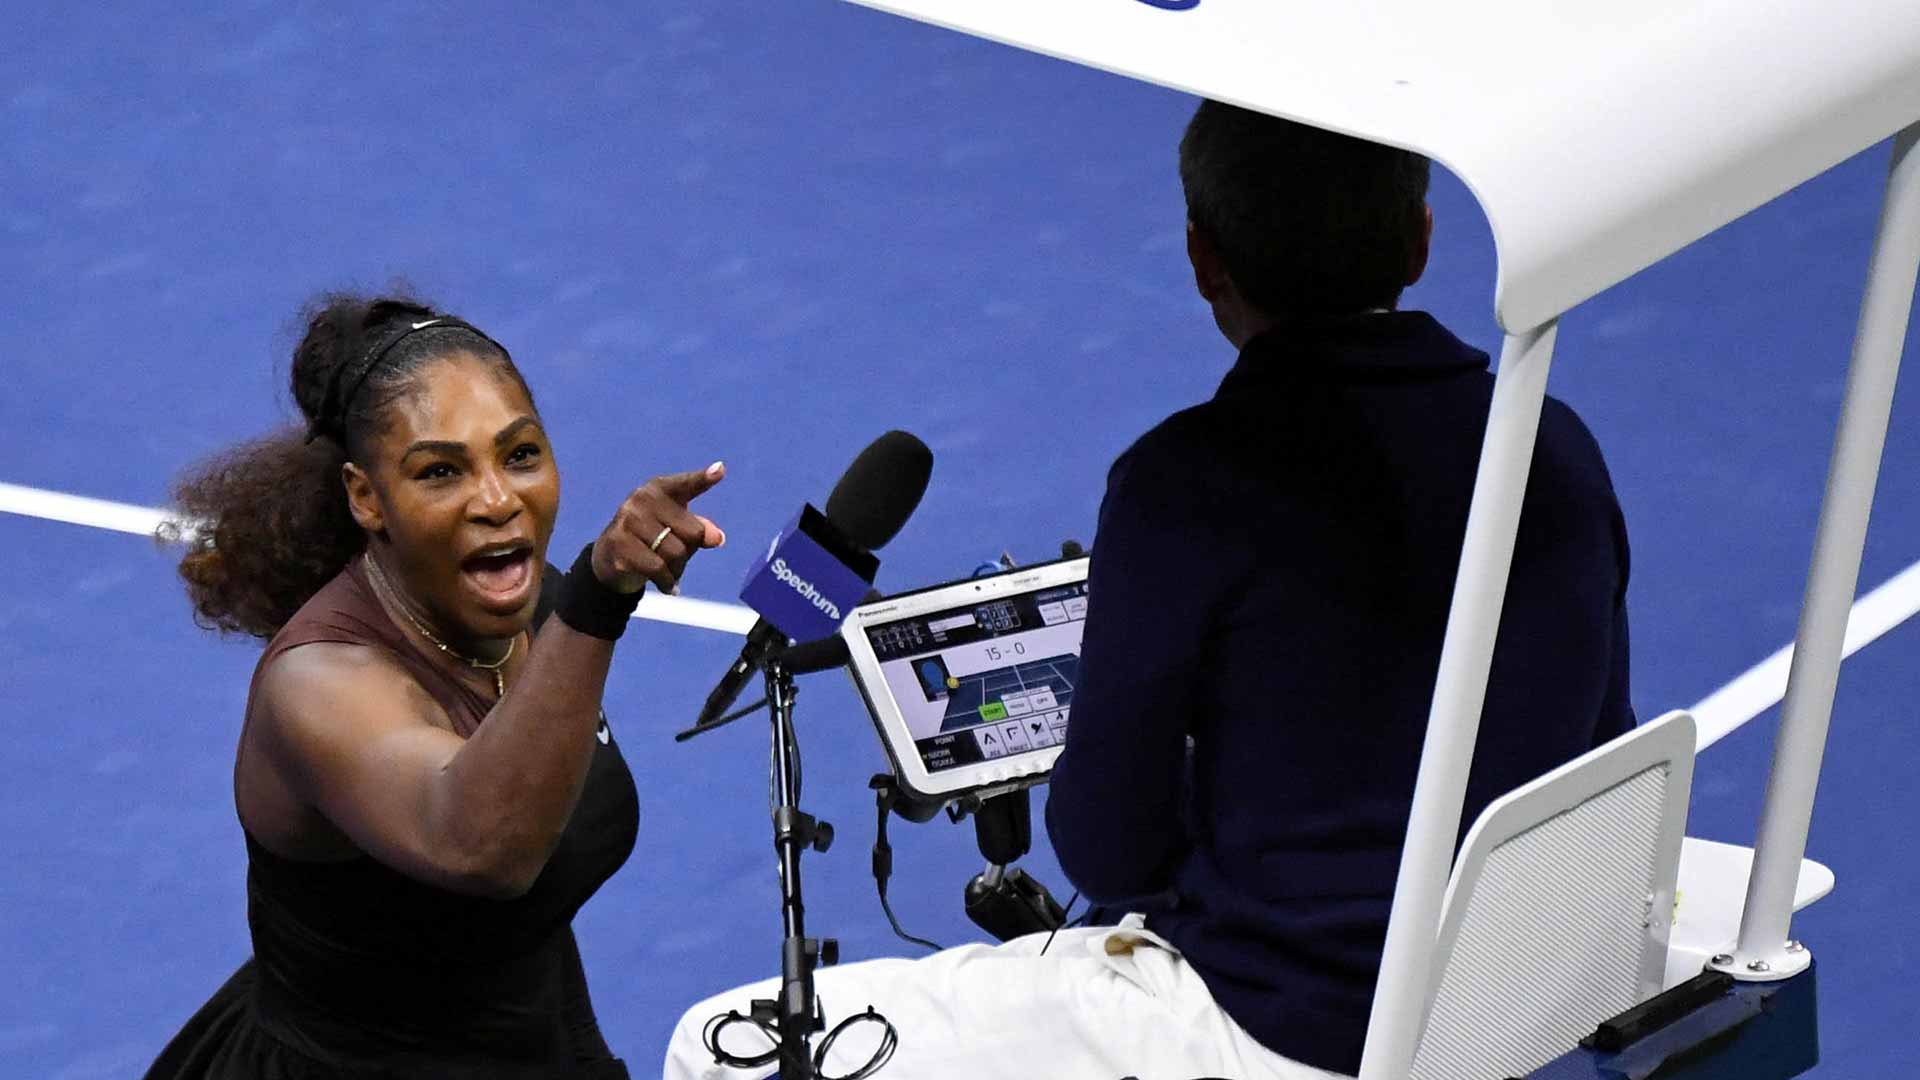 Una caricatura de Serena Williams recibe críticas por “sexista” y “racista”